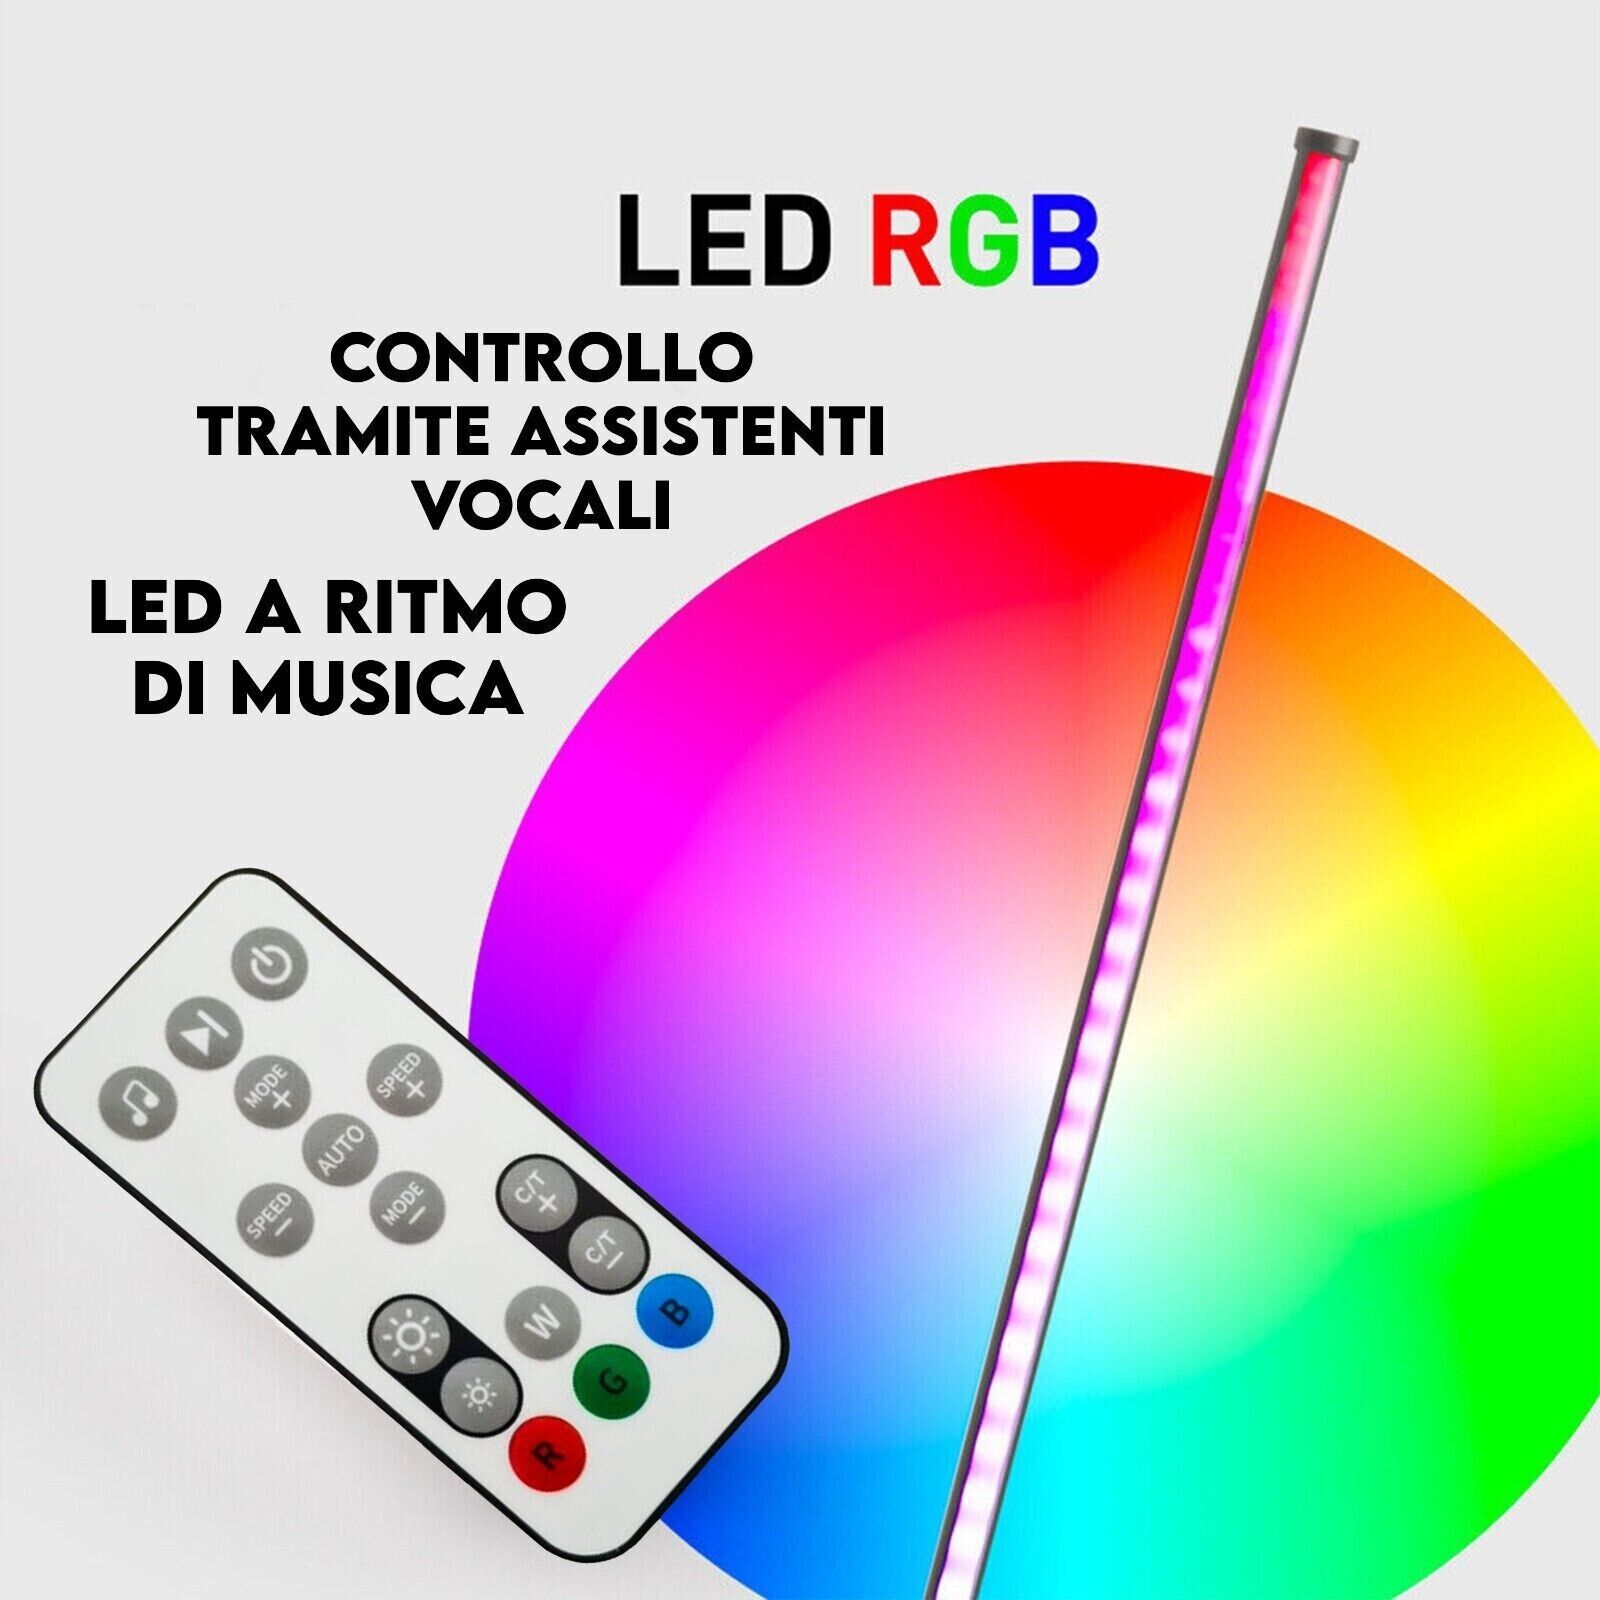 Lampada da terra a stelo LED design minimal moderno telecomando RGB ba